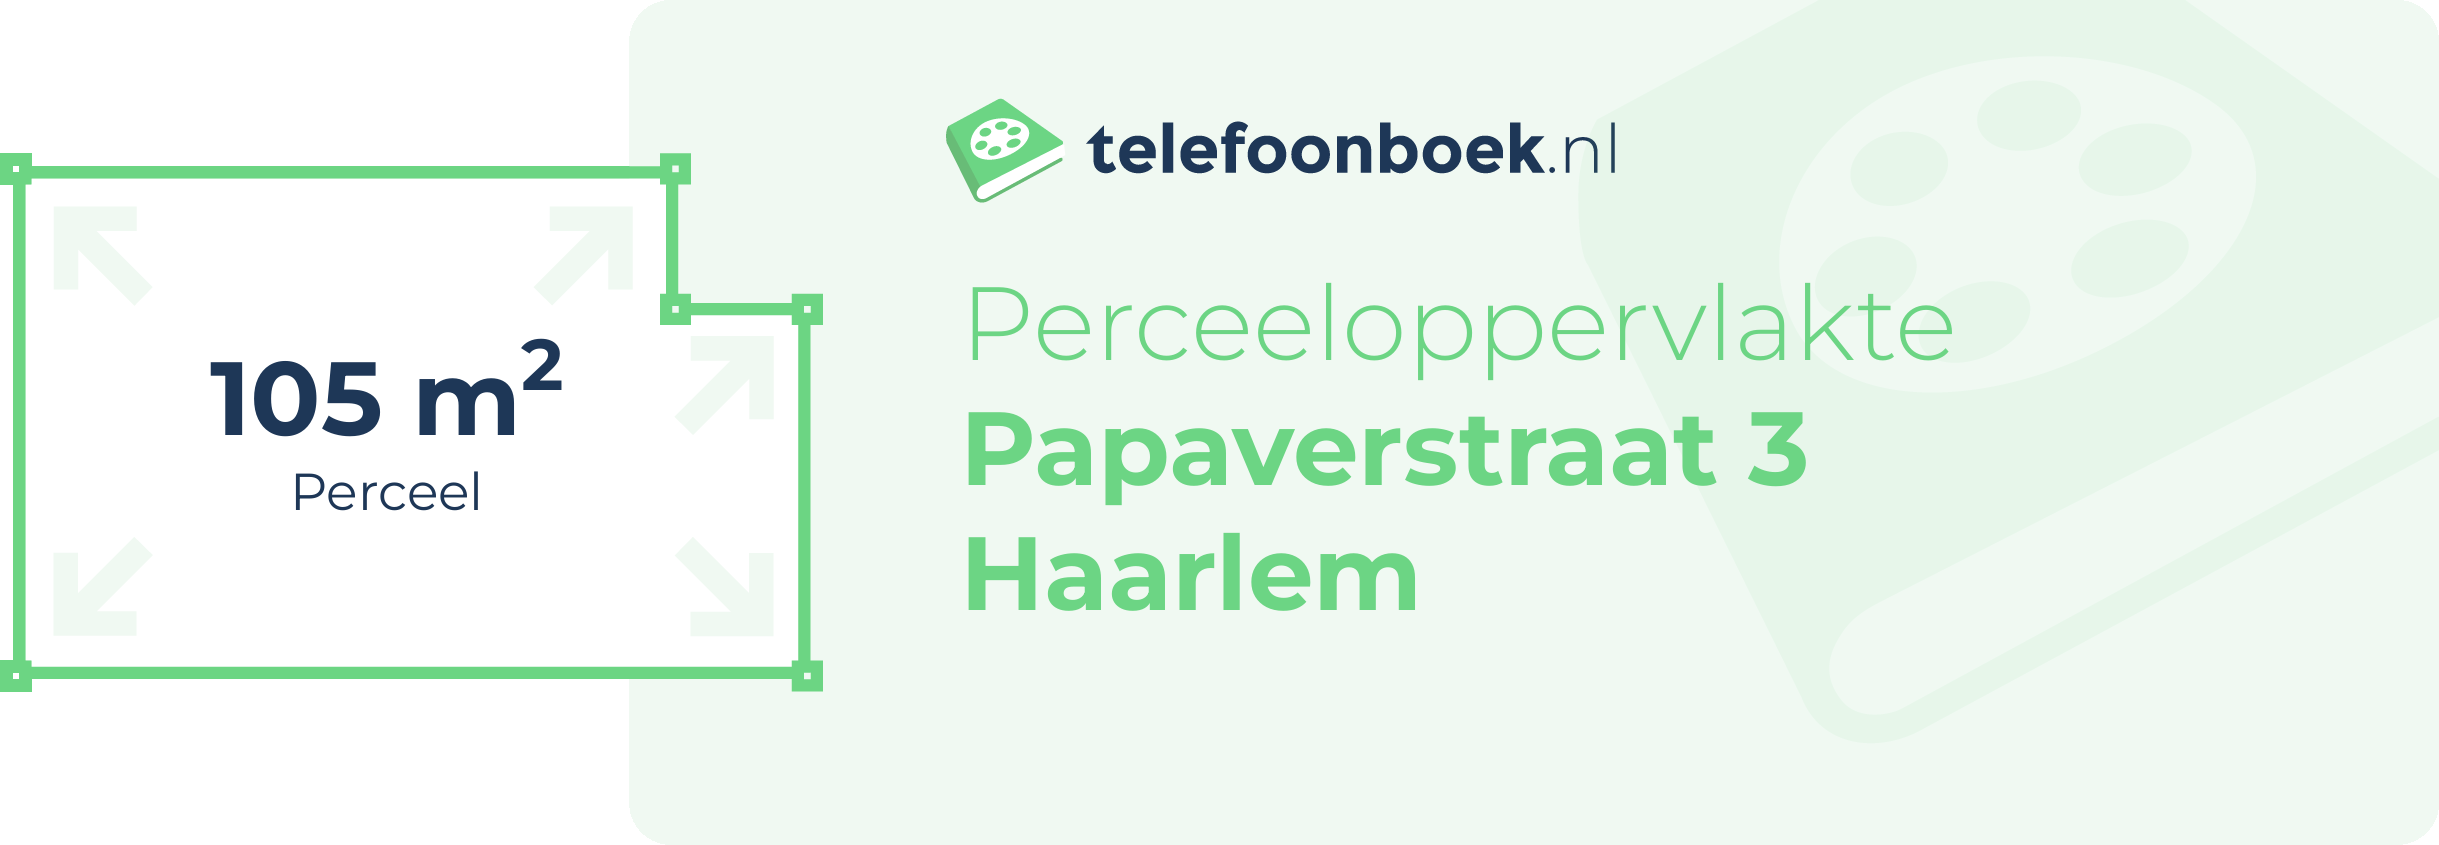 Perceeloppervlakte Papaverstraat 3 Haarlem